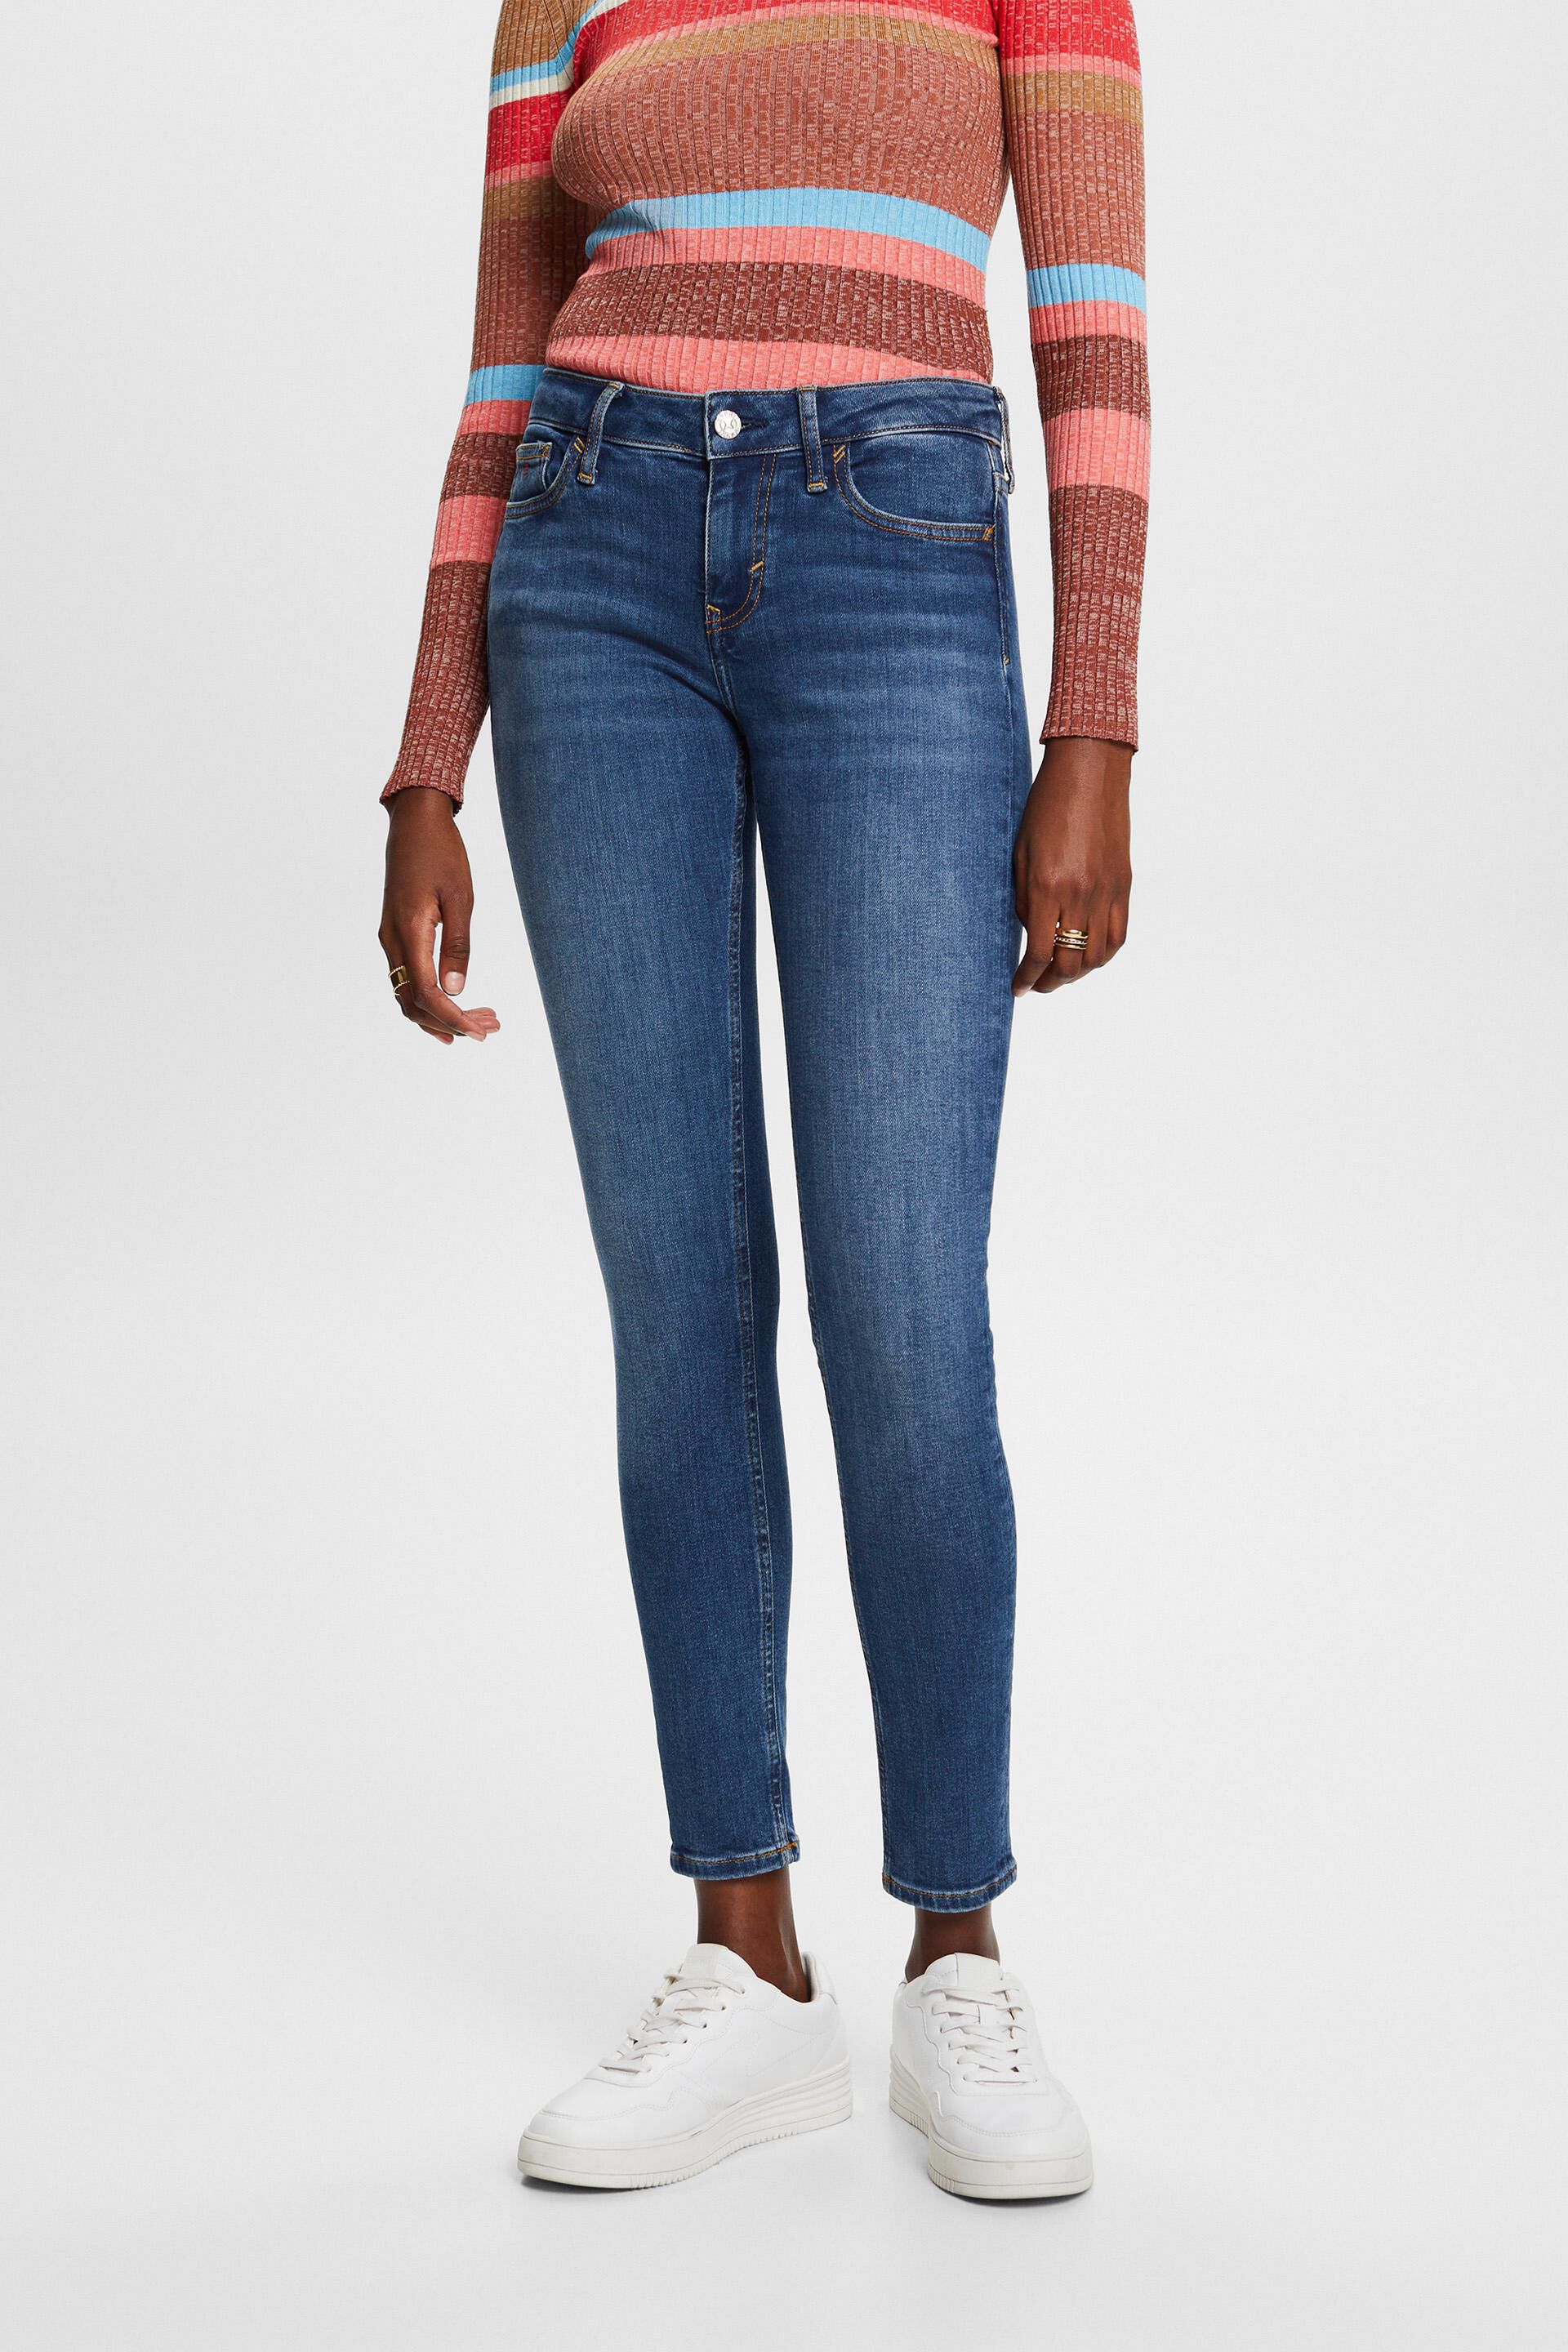 Esprit jeans Premium skinny mid-rise